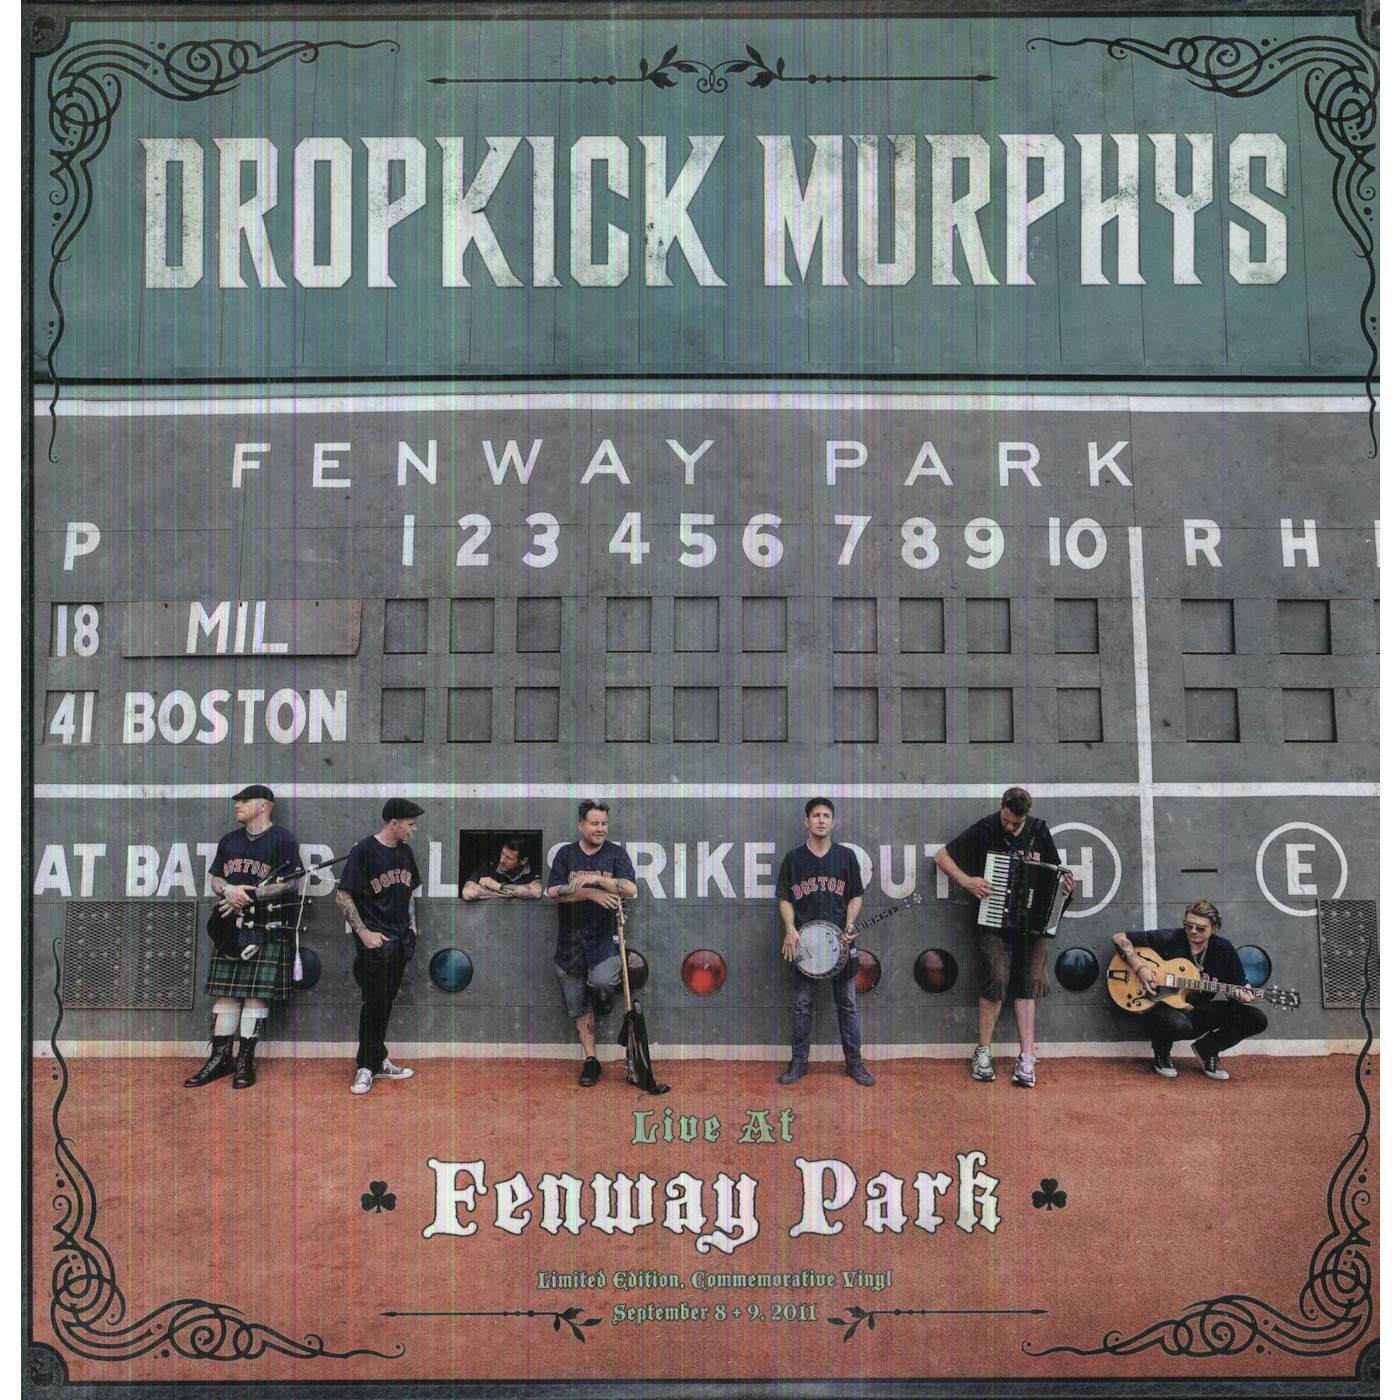 Dropkick Murphys LIVE AT FENWAY Vinyl Record